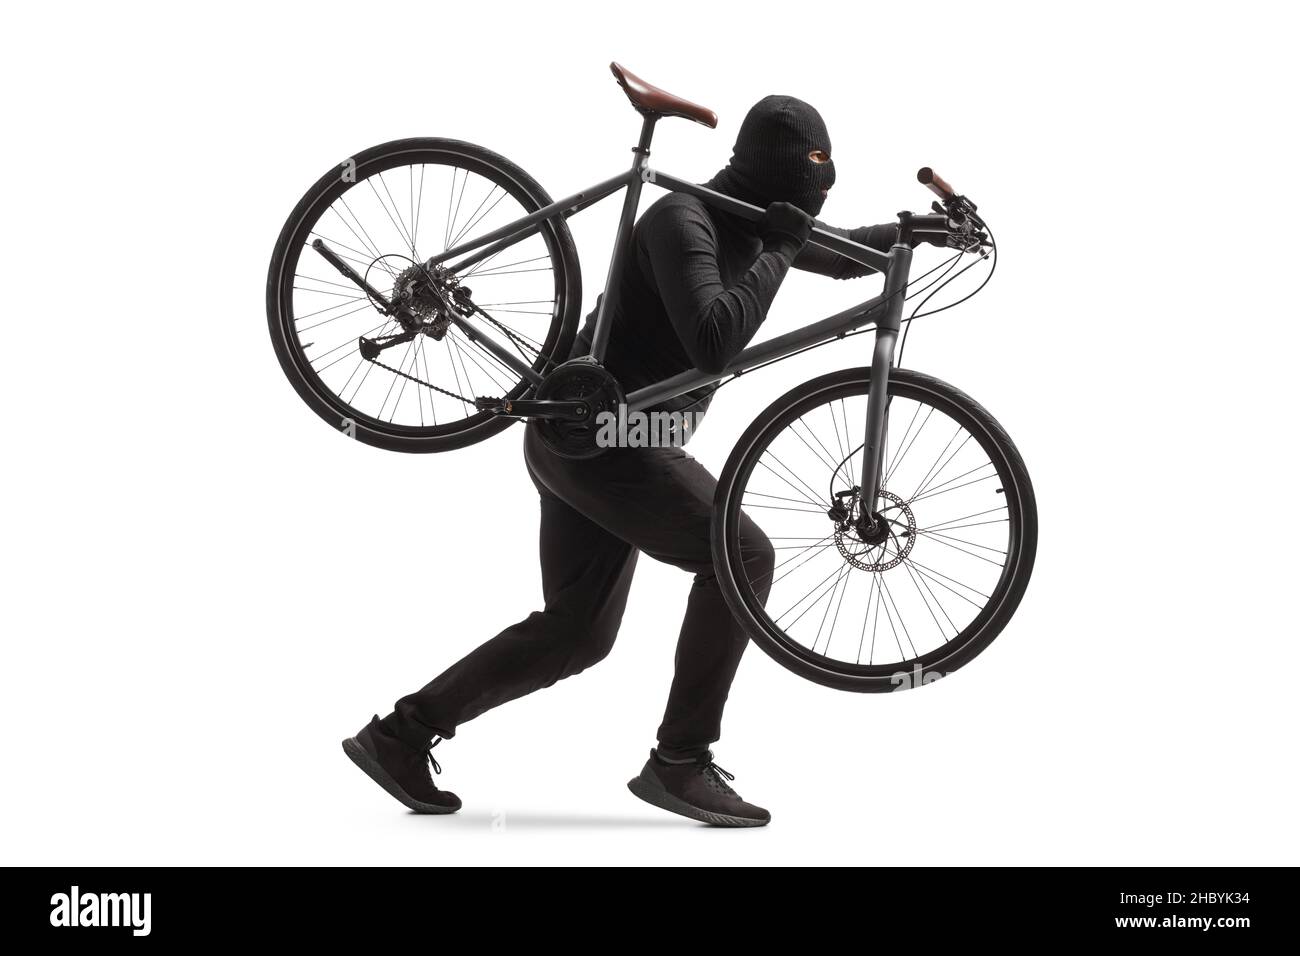 Plan de profil complet d'un cambrioleur dans des vêtements noirs avec une balaclava voler un vélo isolé sur fond blanc Banque D'Images